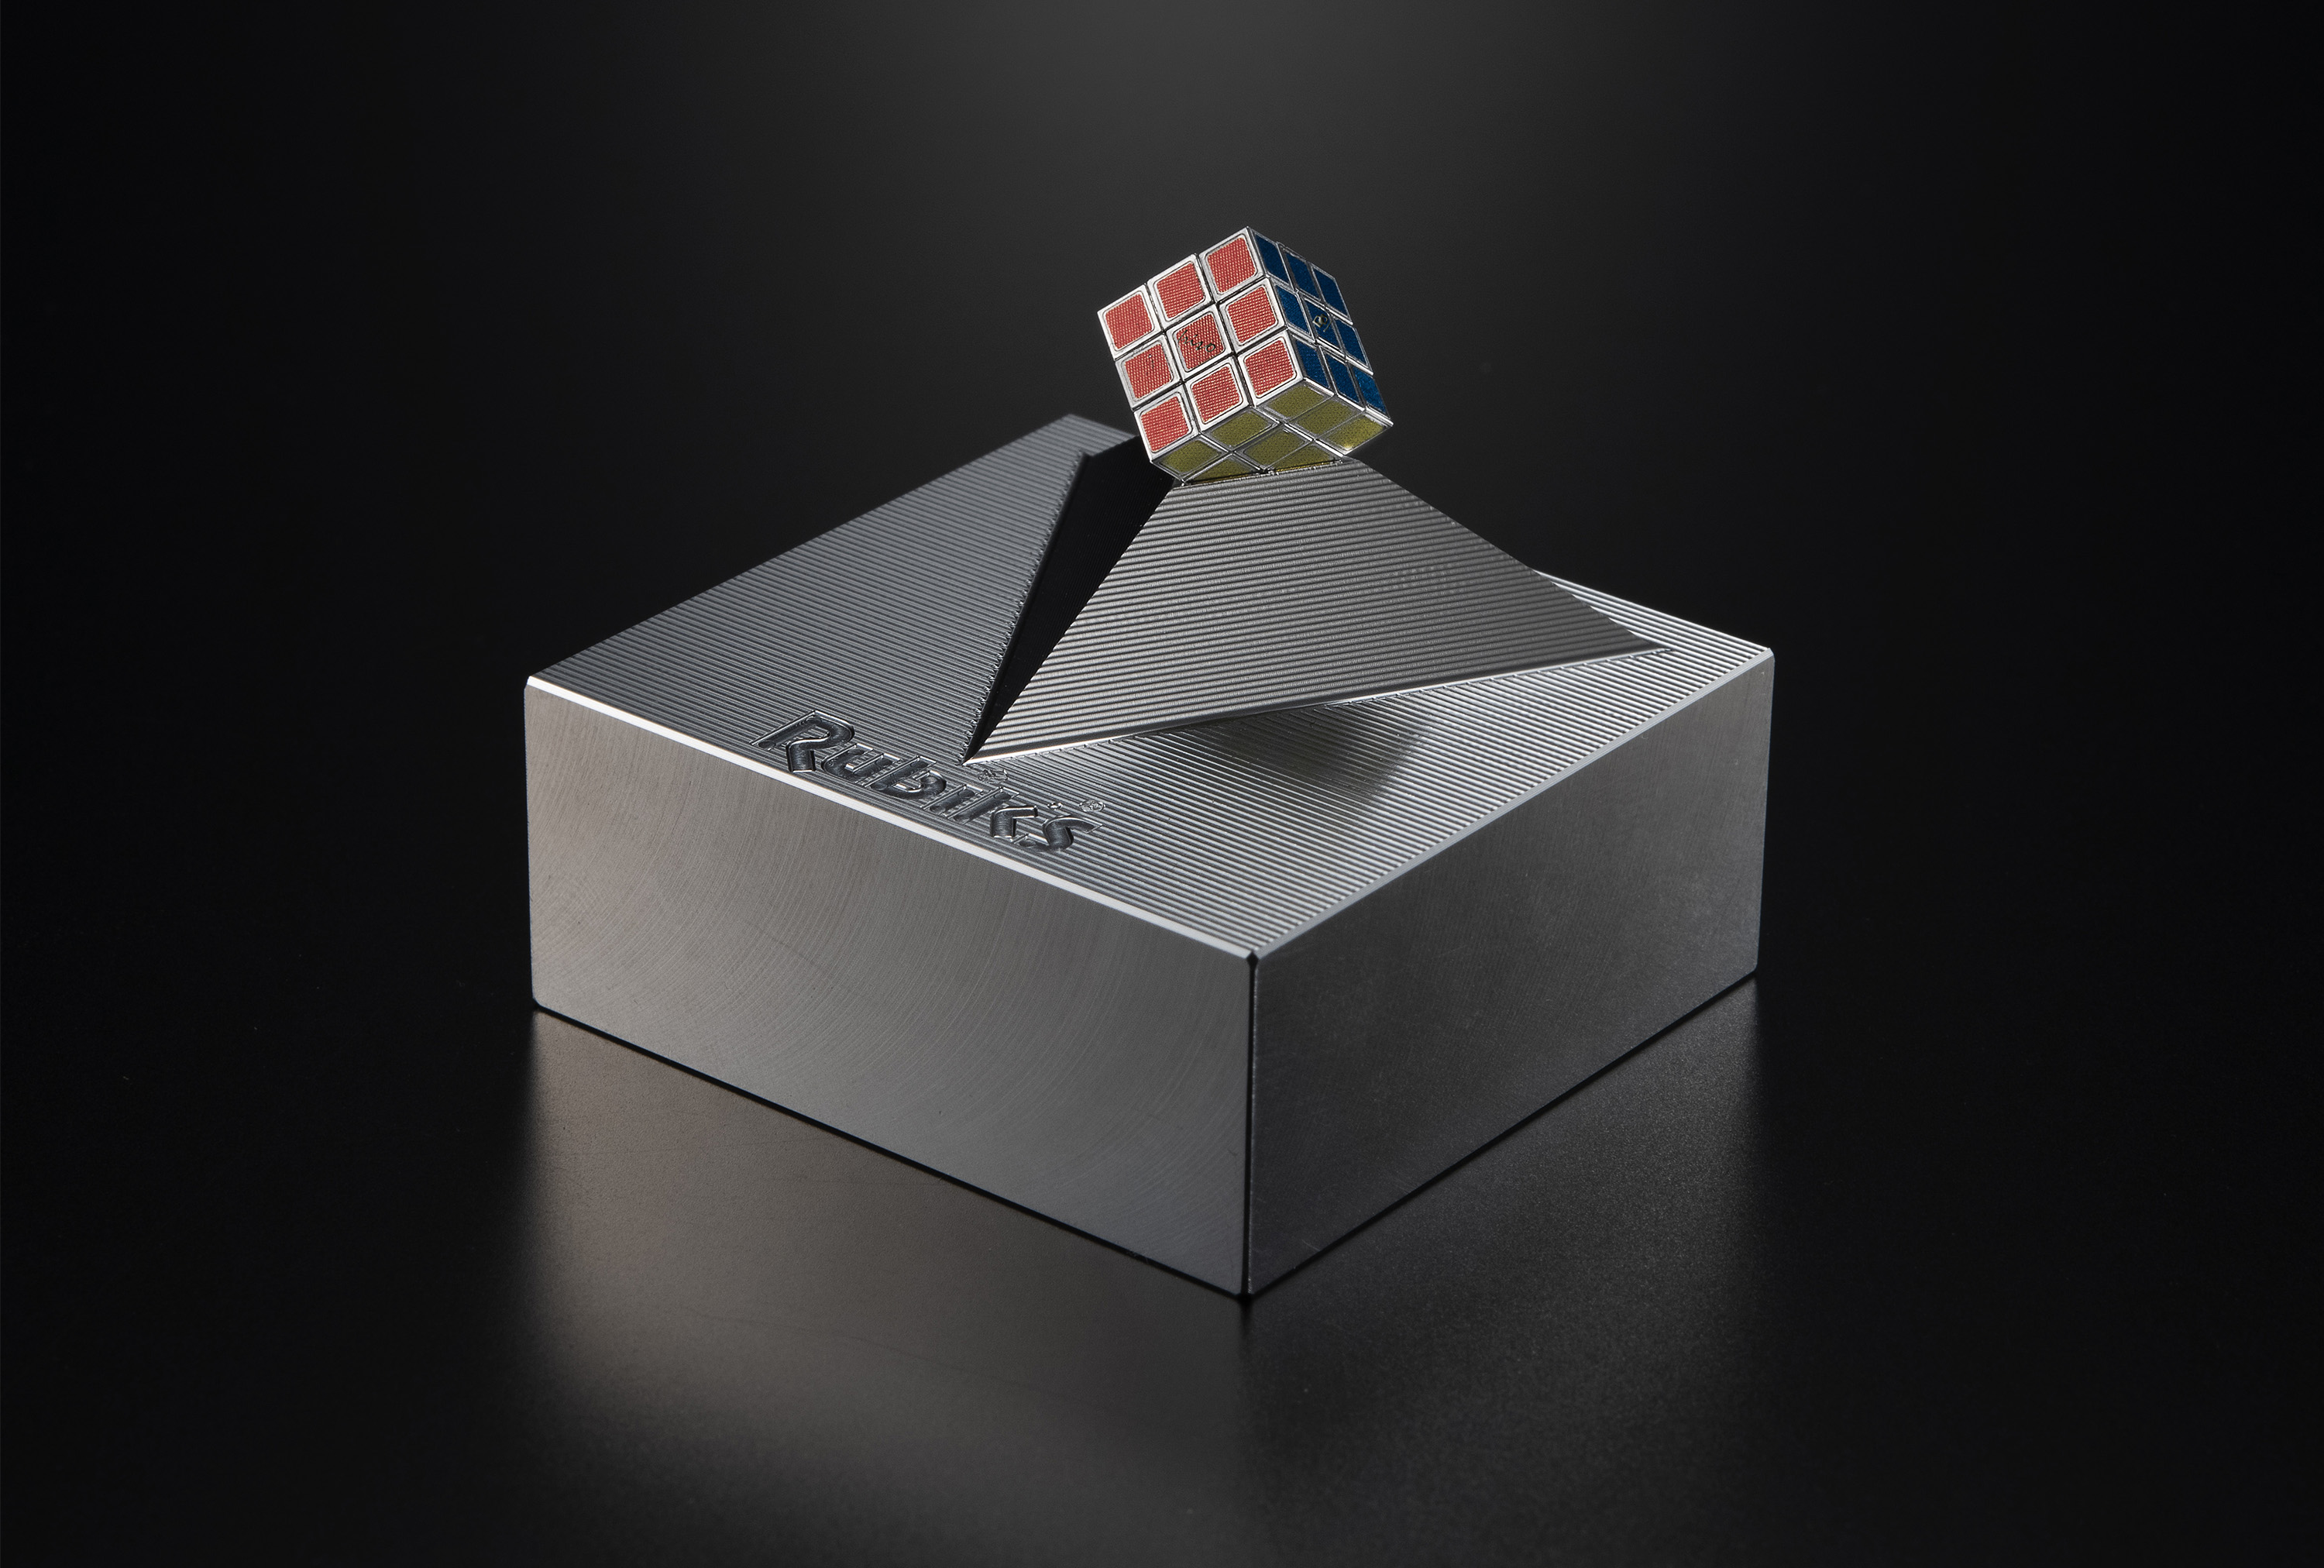 メガハウスより、日本の精密加工技術で作られた「世界最小の金属製ルービックキューブ」が発売決定。世界展開40周年記念のファンアイテム_004